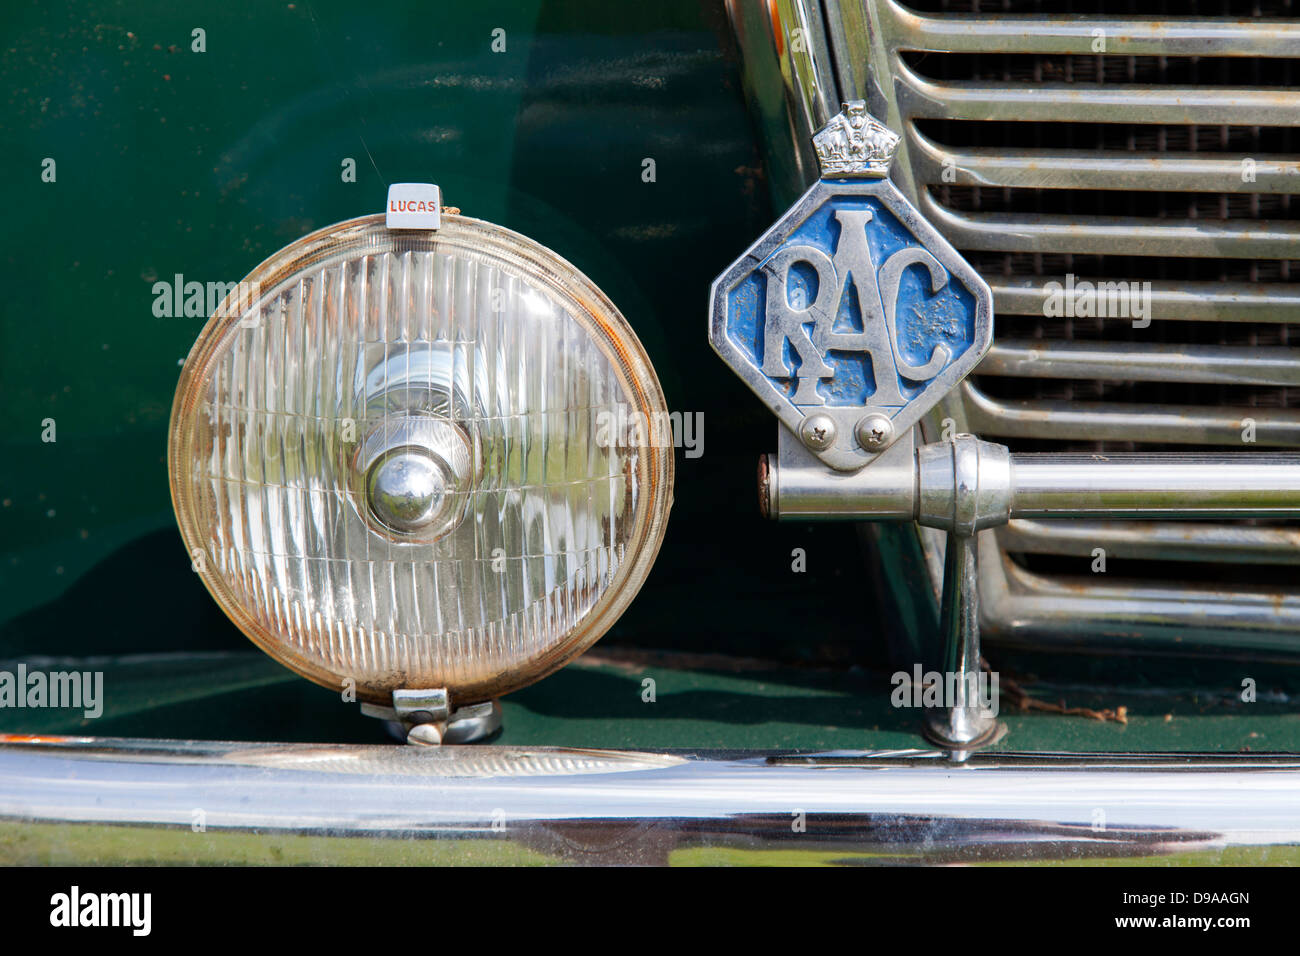 Le Royal Automobile Club (RAC) Insigne sur une voiture classique au Royaume-Uni. Banque D'Images